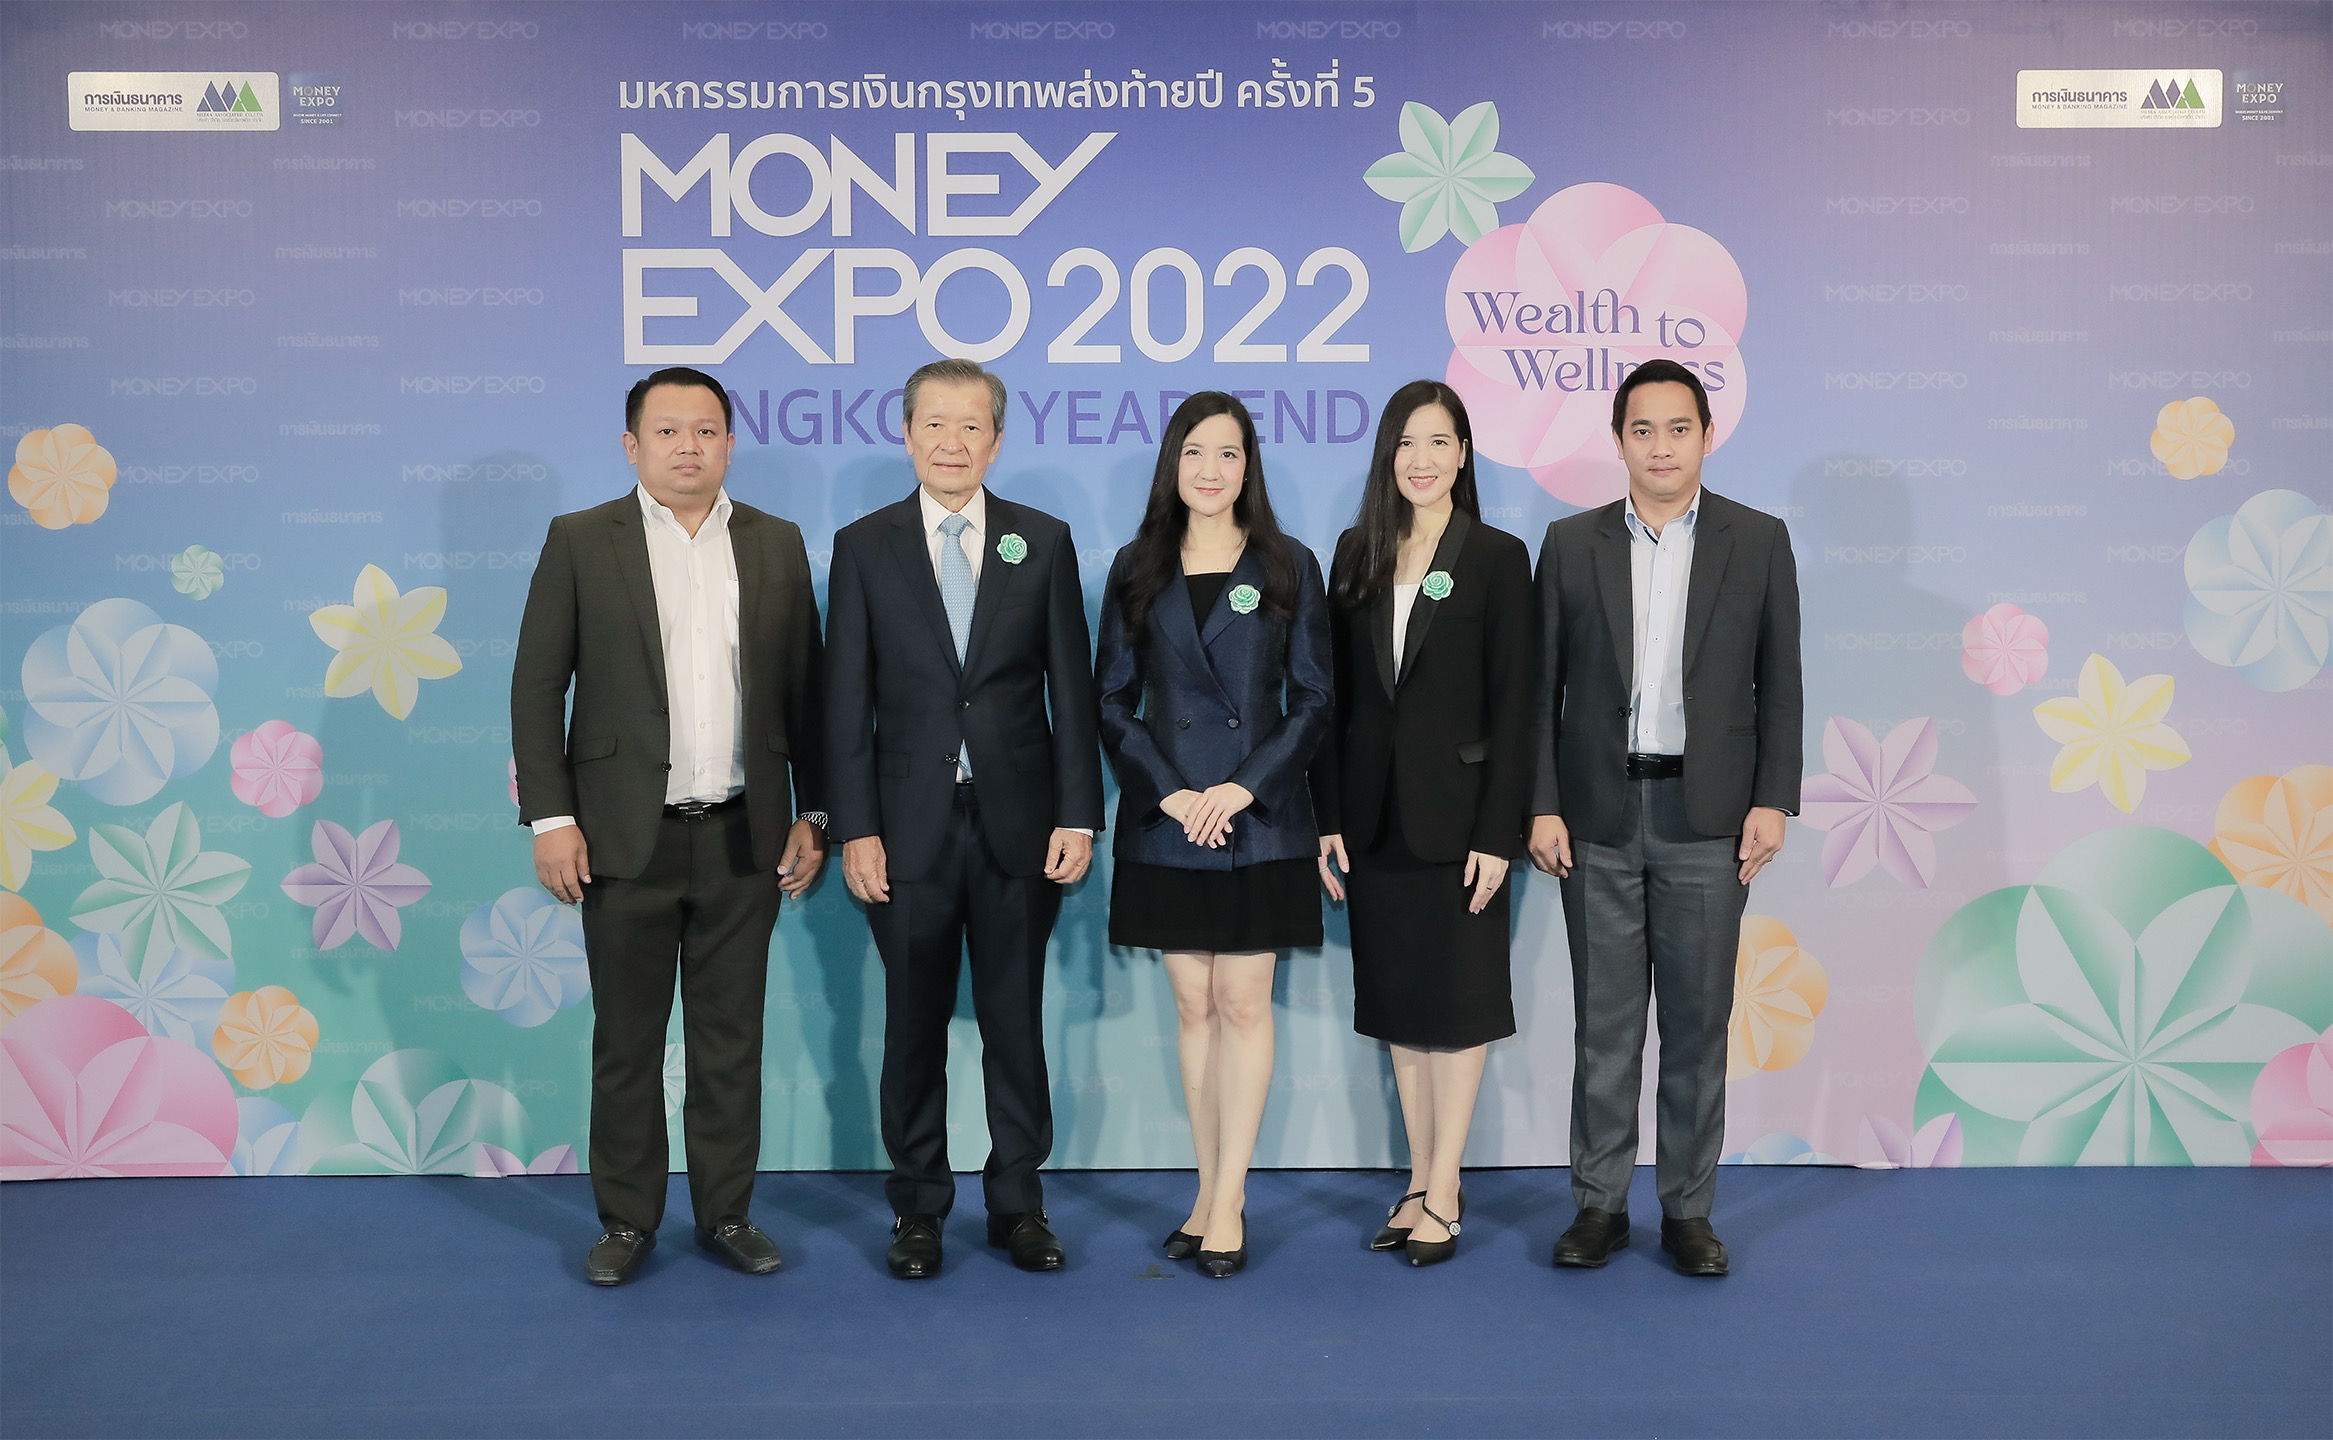 อาคเนย์ประกันชีวิต ร่วมออกบูธมหกรรมการเงินส่งท้ายปี Money Expo Bangkok Year-End 2022